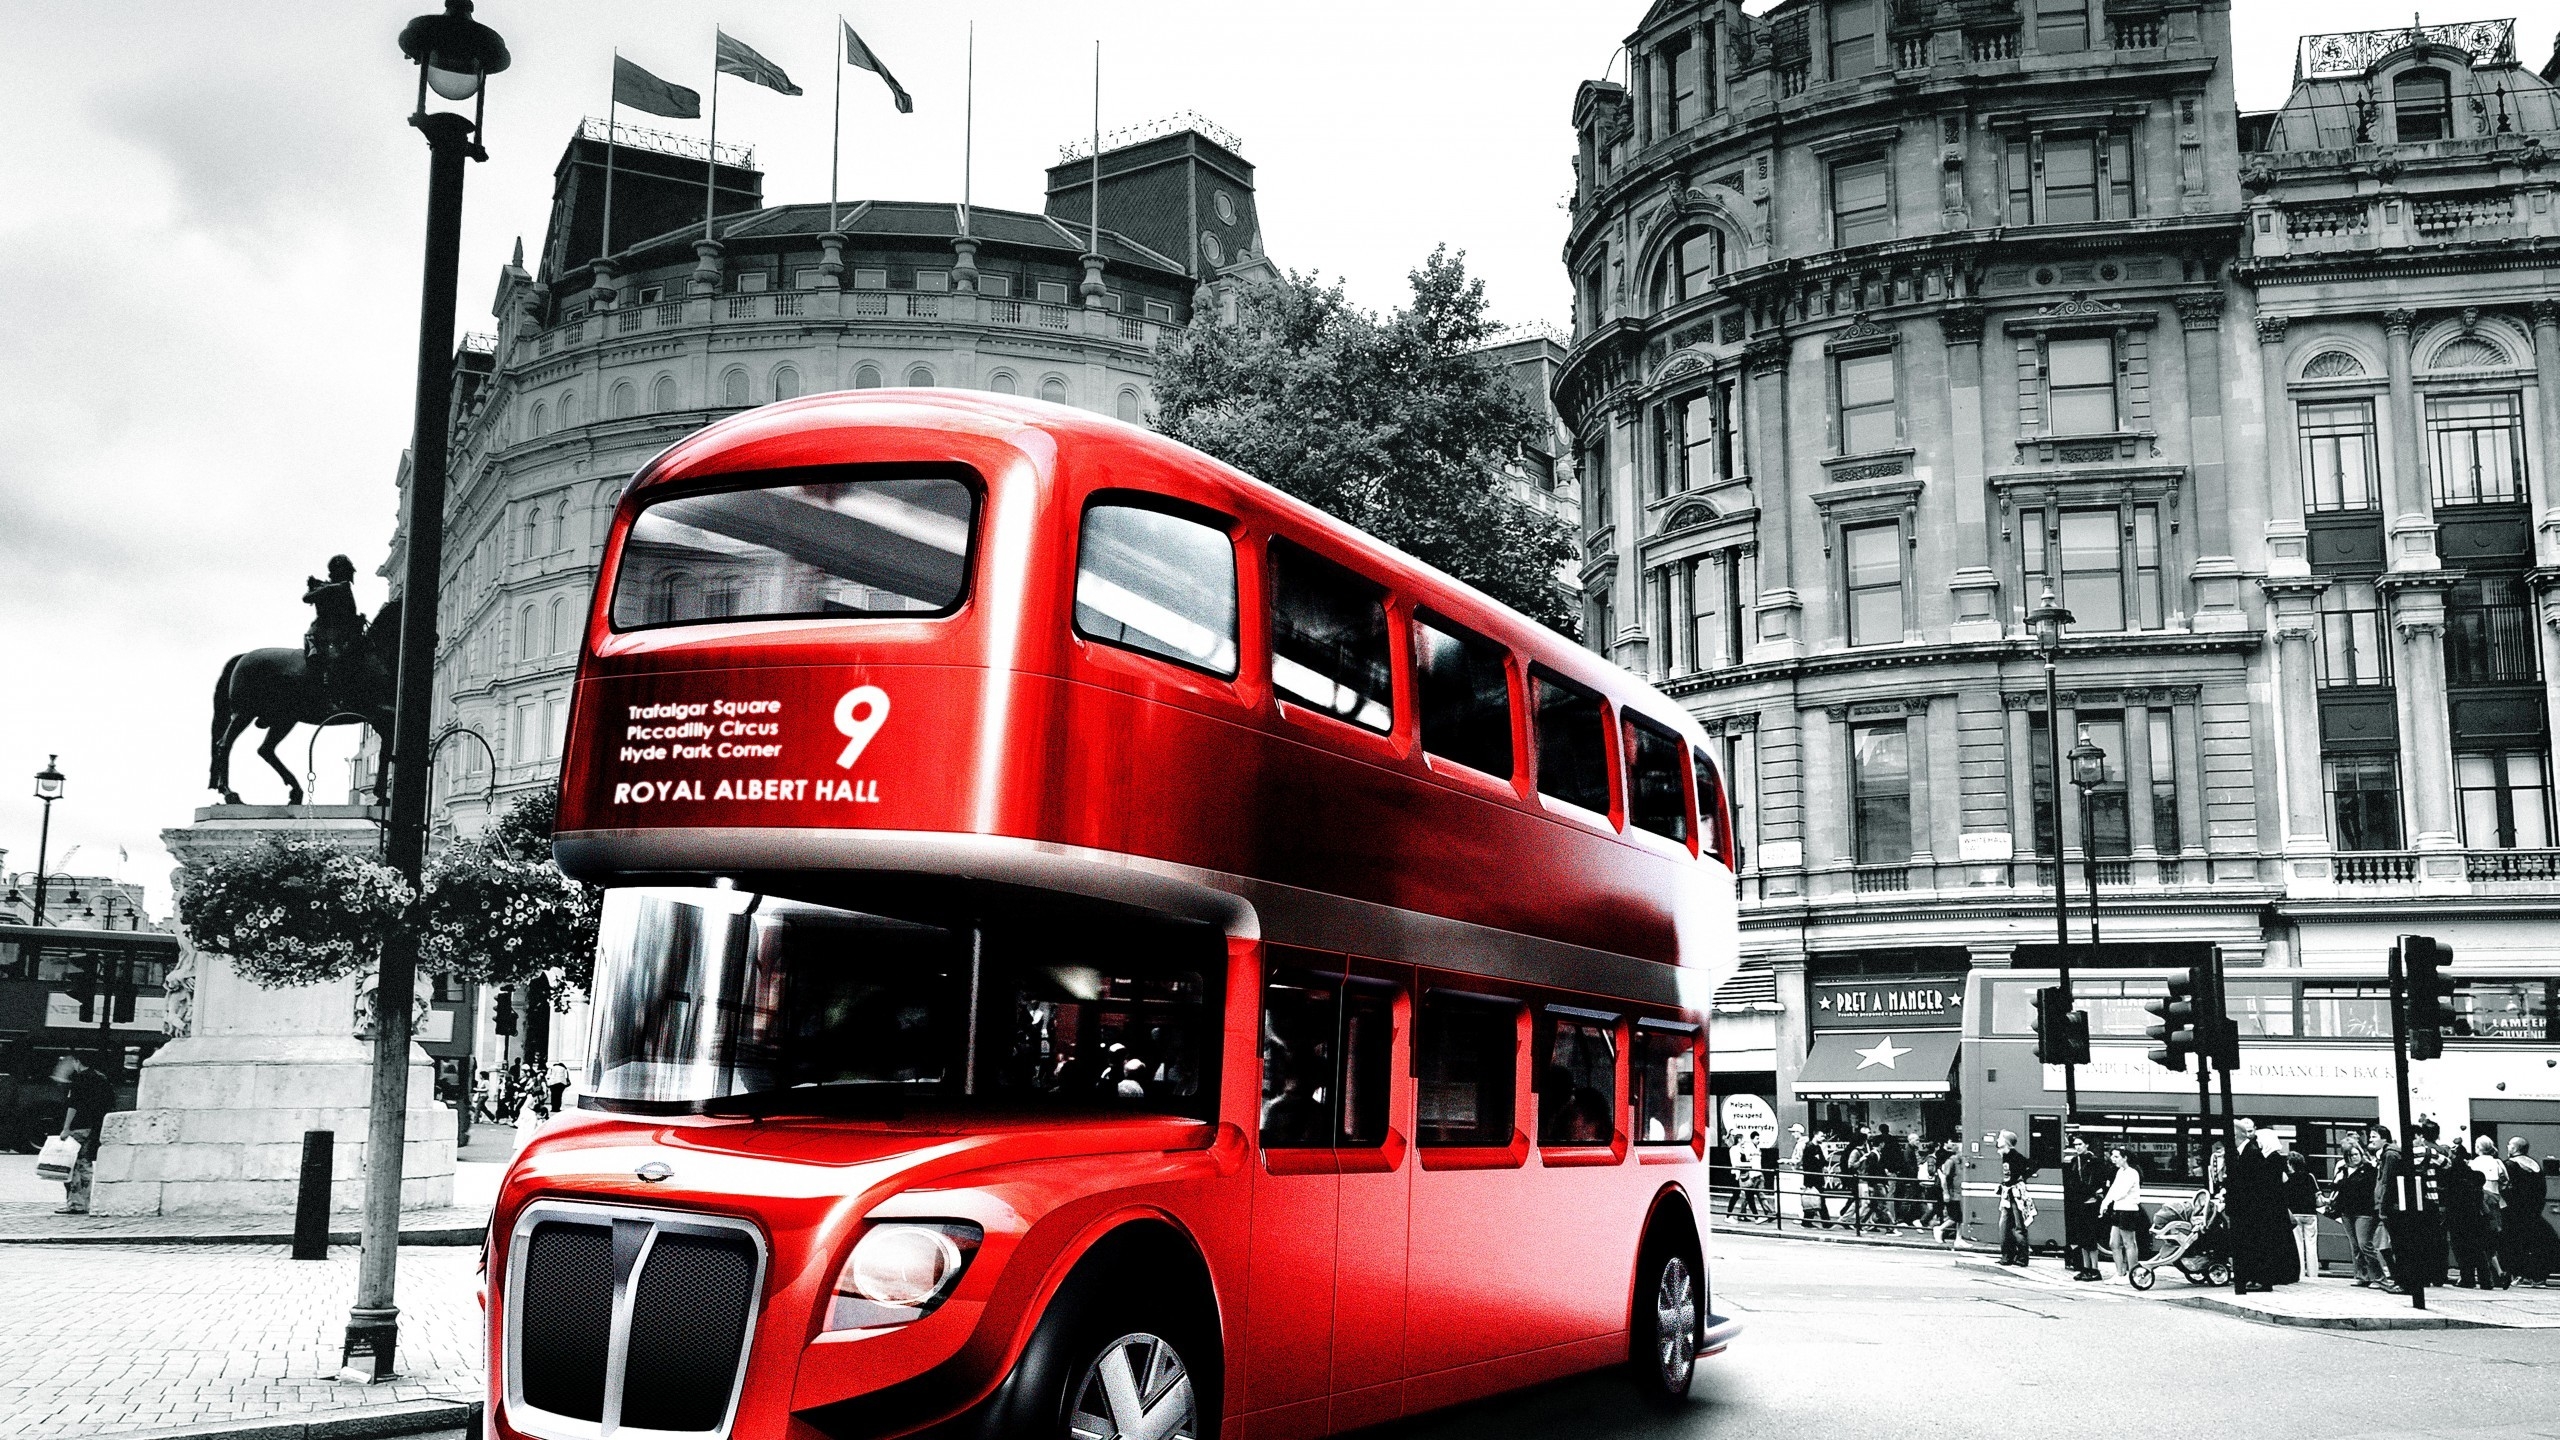 London Bus Design for 2560x1440 HDTV resolution